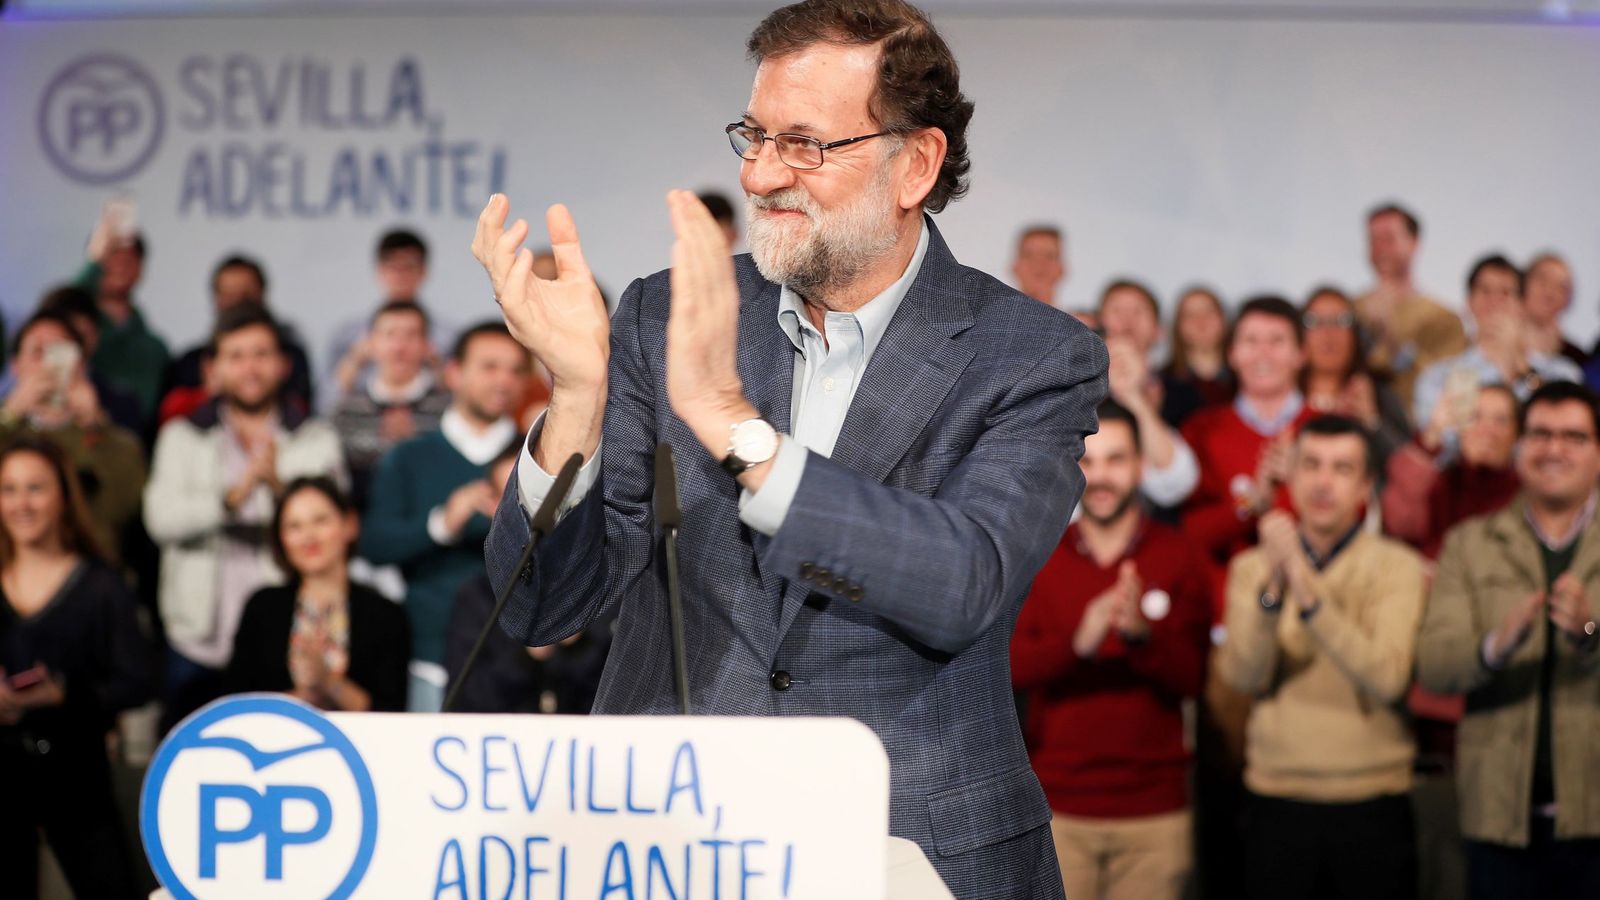 Foto: El presidente del Gobierno, Mariano Rajoy, durante su intervención en la clausura de un acto del PP de Sevilla, este 20 de enero. (EFE)